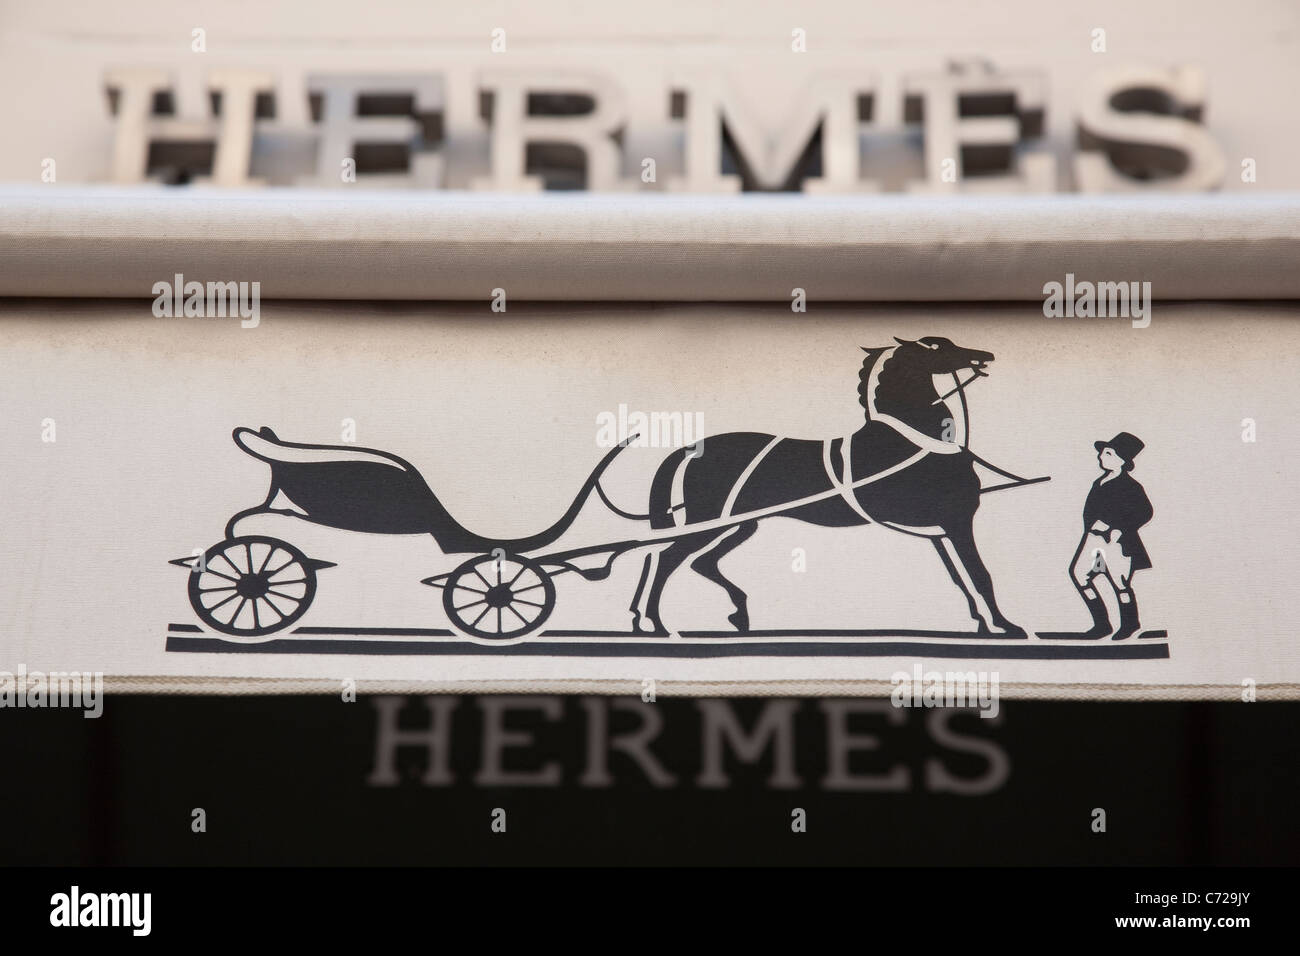 Logotipo de la marca Hermes en escaparates en la calle Paradis, Marsella, Francia Foto de stock